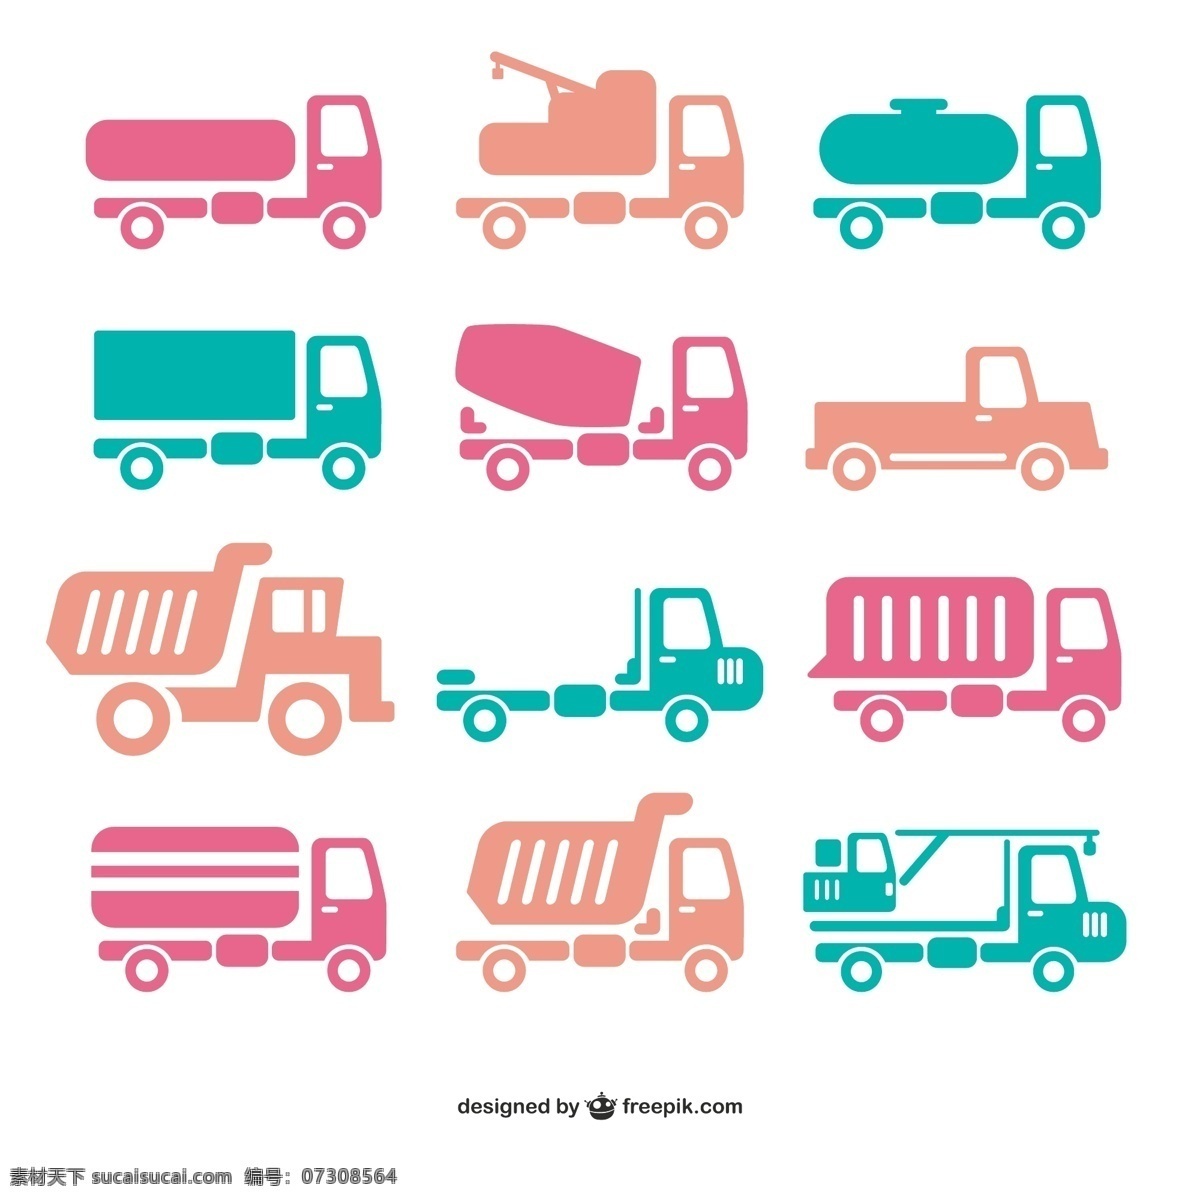 运输车图标 交通工具图标 运输车 货车 水泥车 垃圾车 卡车 搬运车 吊车 白色